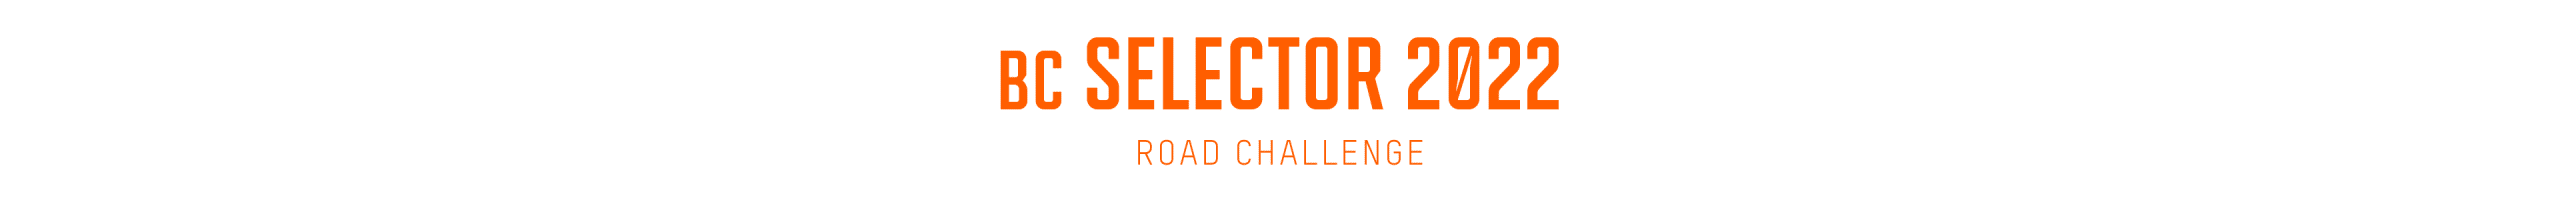 Selector Challenge Headline